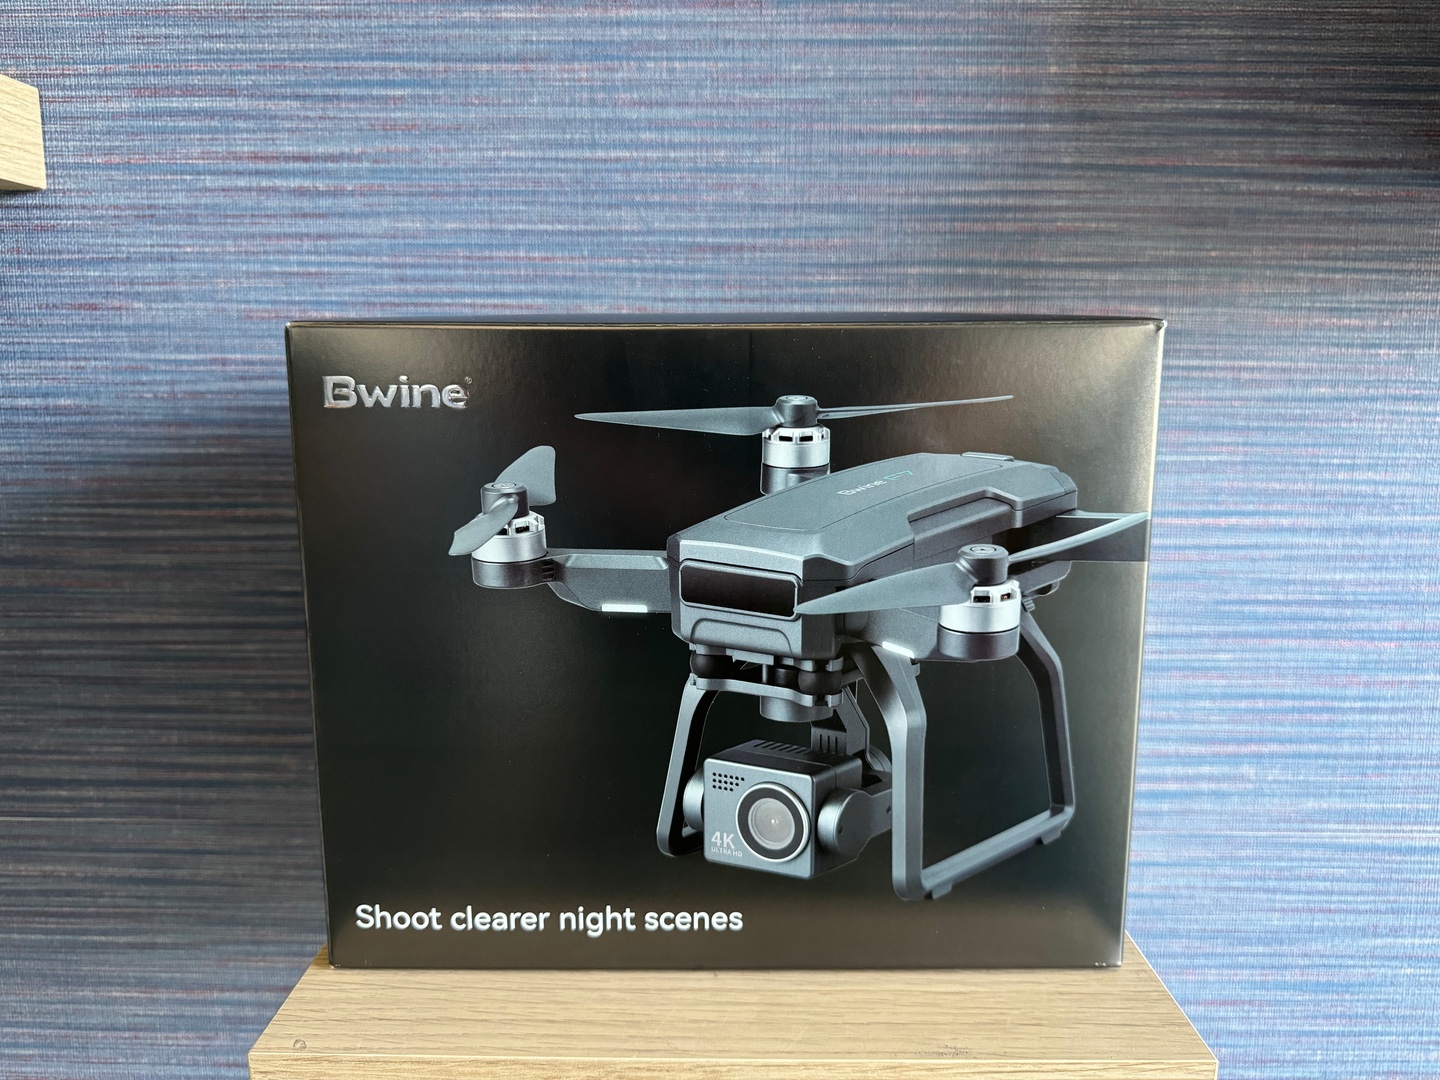 accesorios para electronica - Drone Bwine F7GB2 Nuevo Sellado Completo + EXTRAS!!, RD$ 25,500 NEG